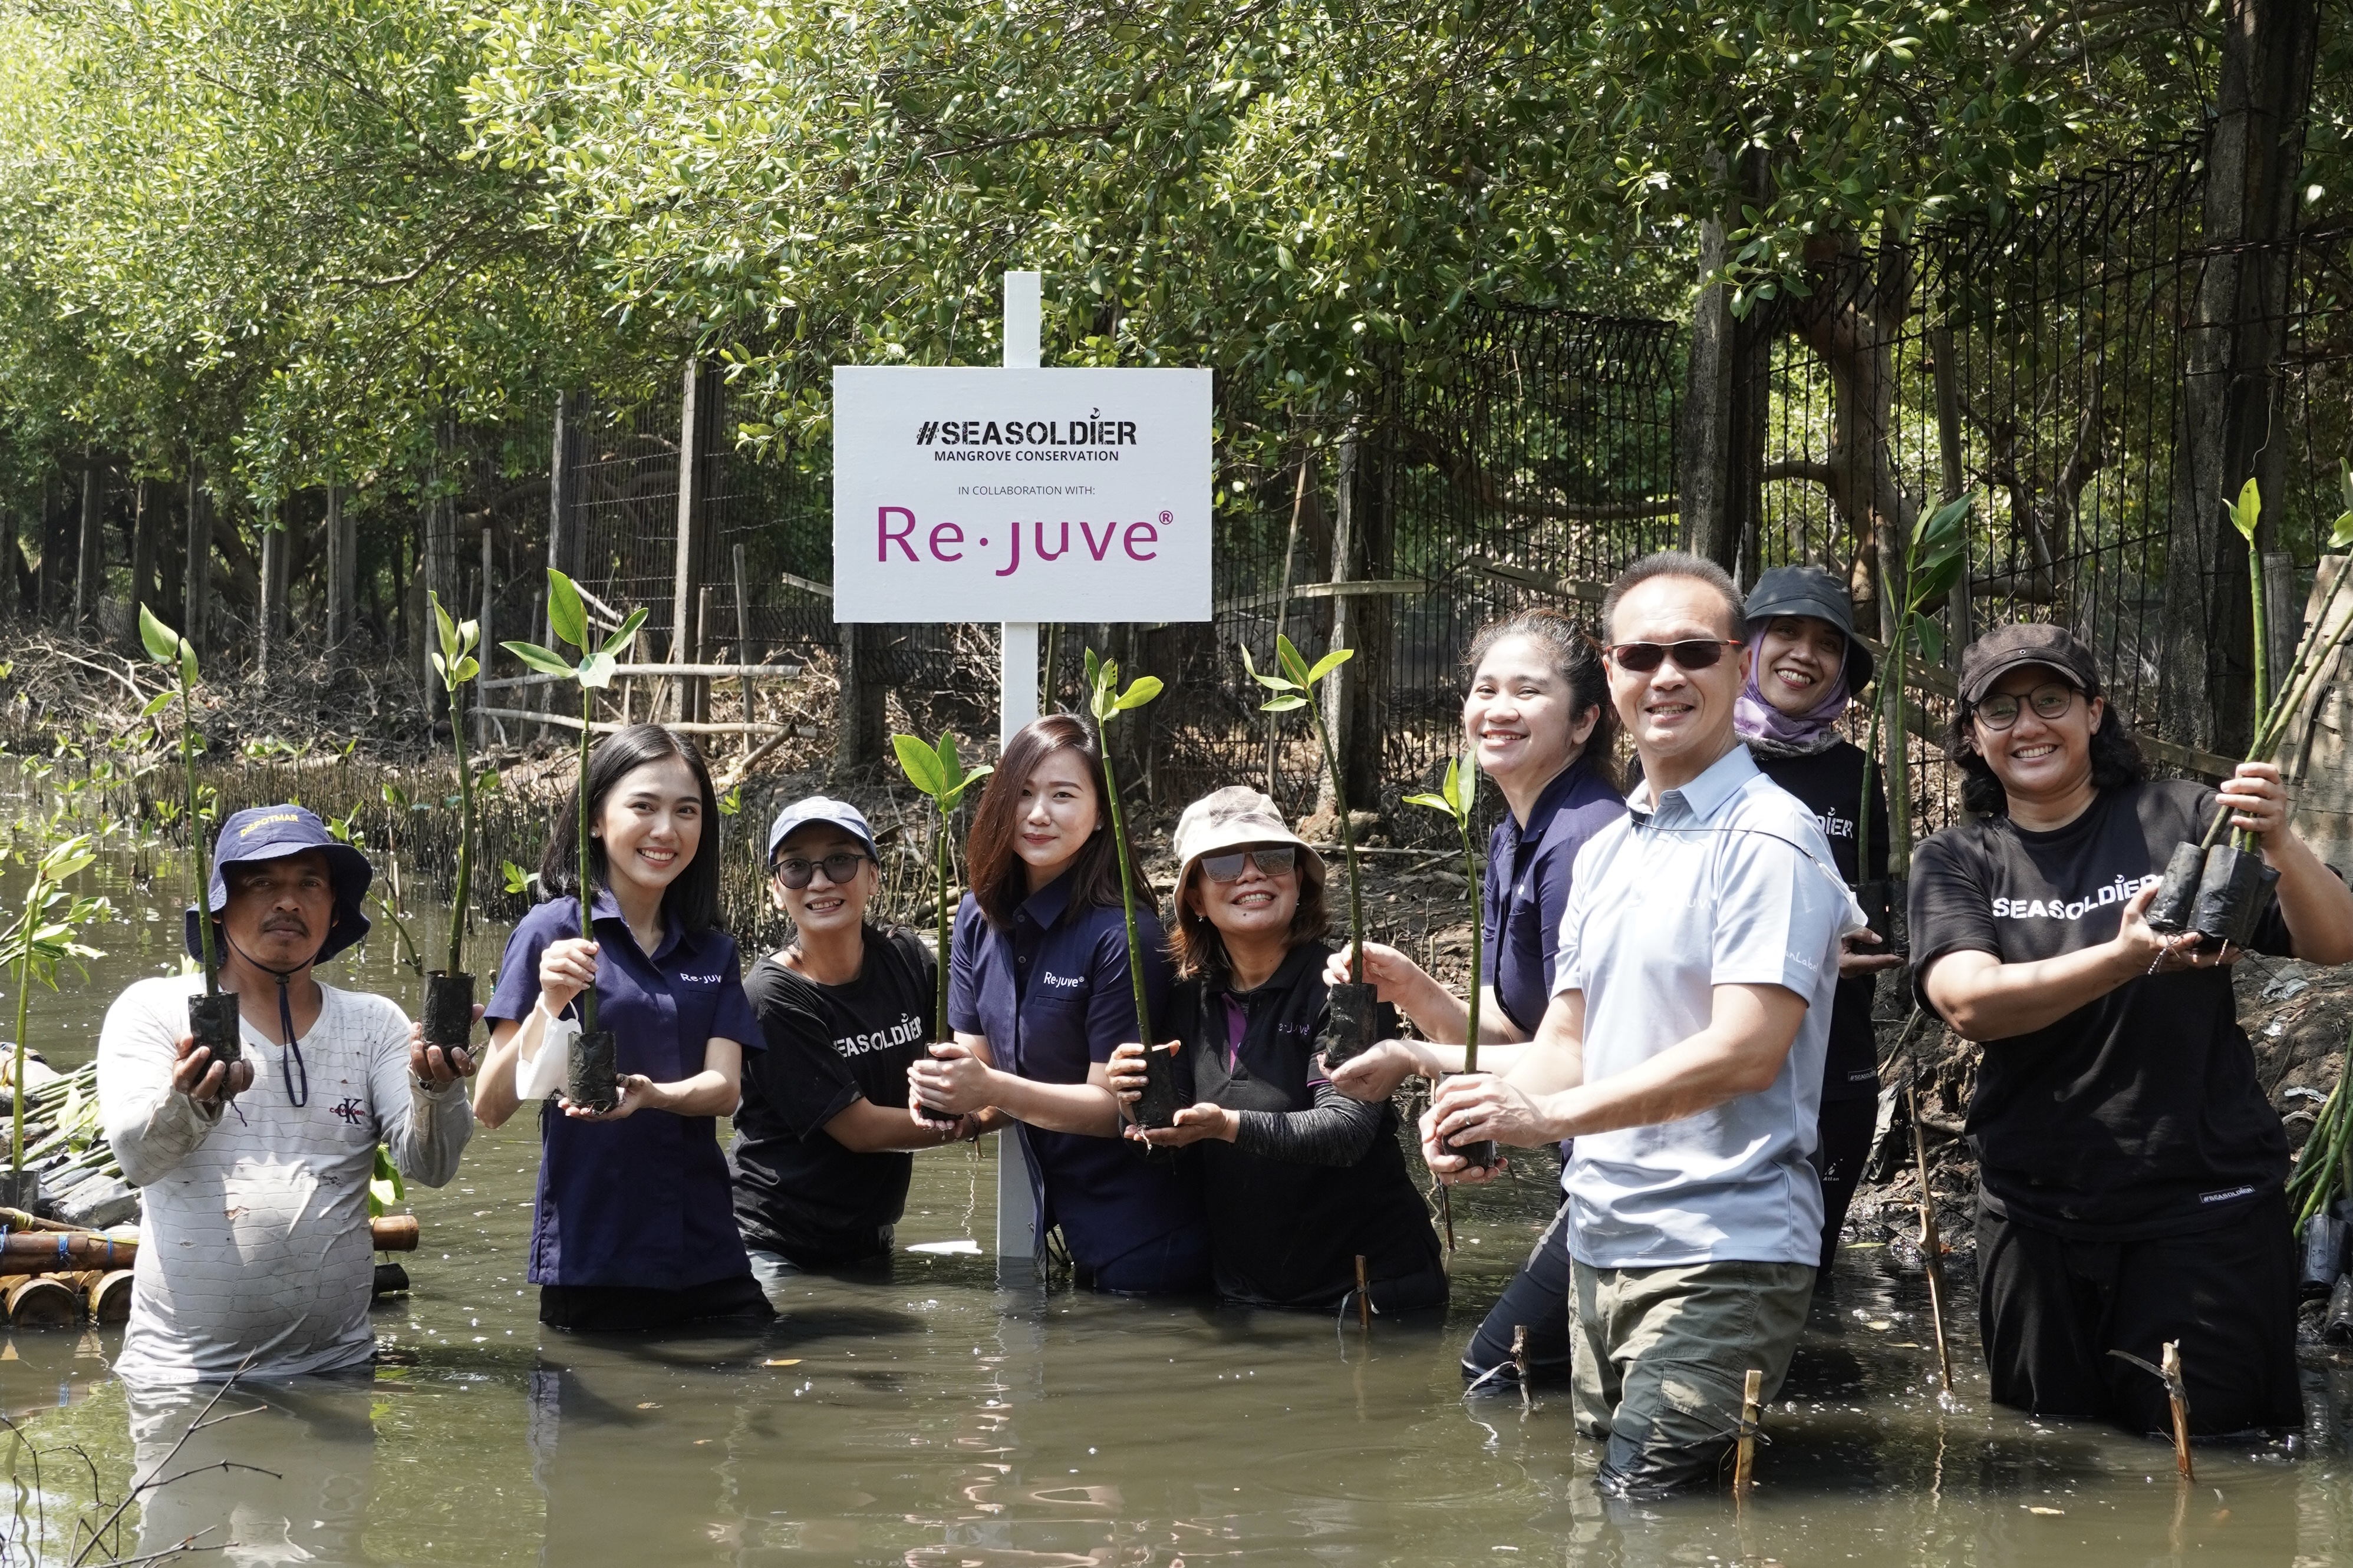 Re.juve Plants 2,500 Mangrove Seedlings with Seasoldier